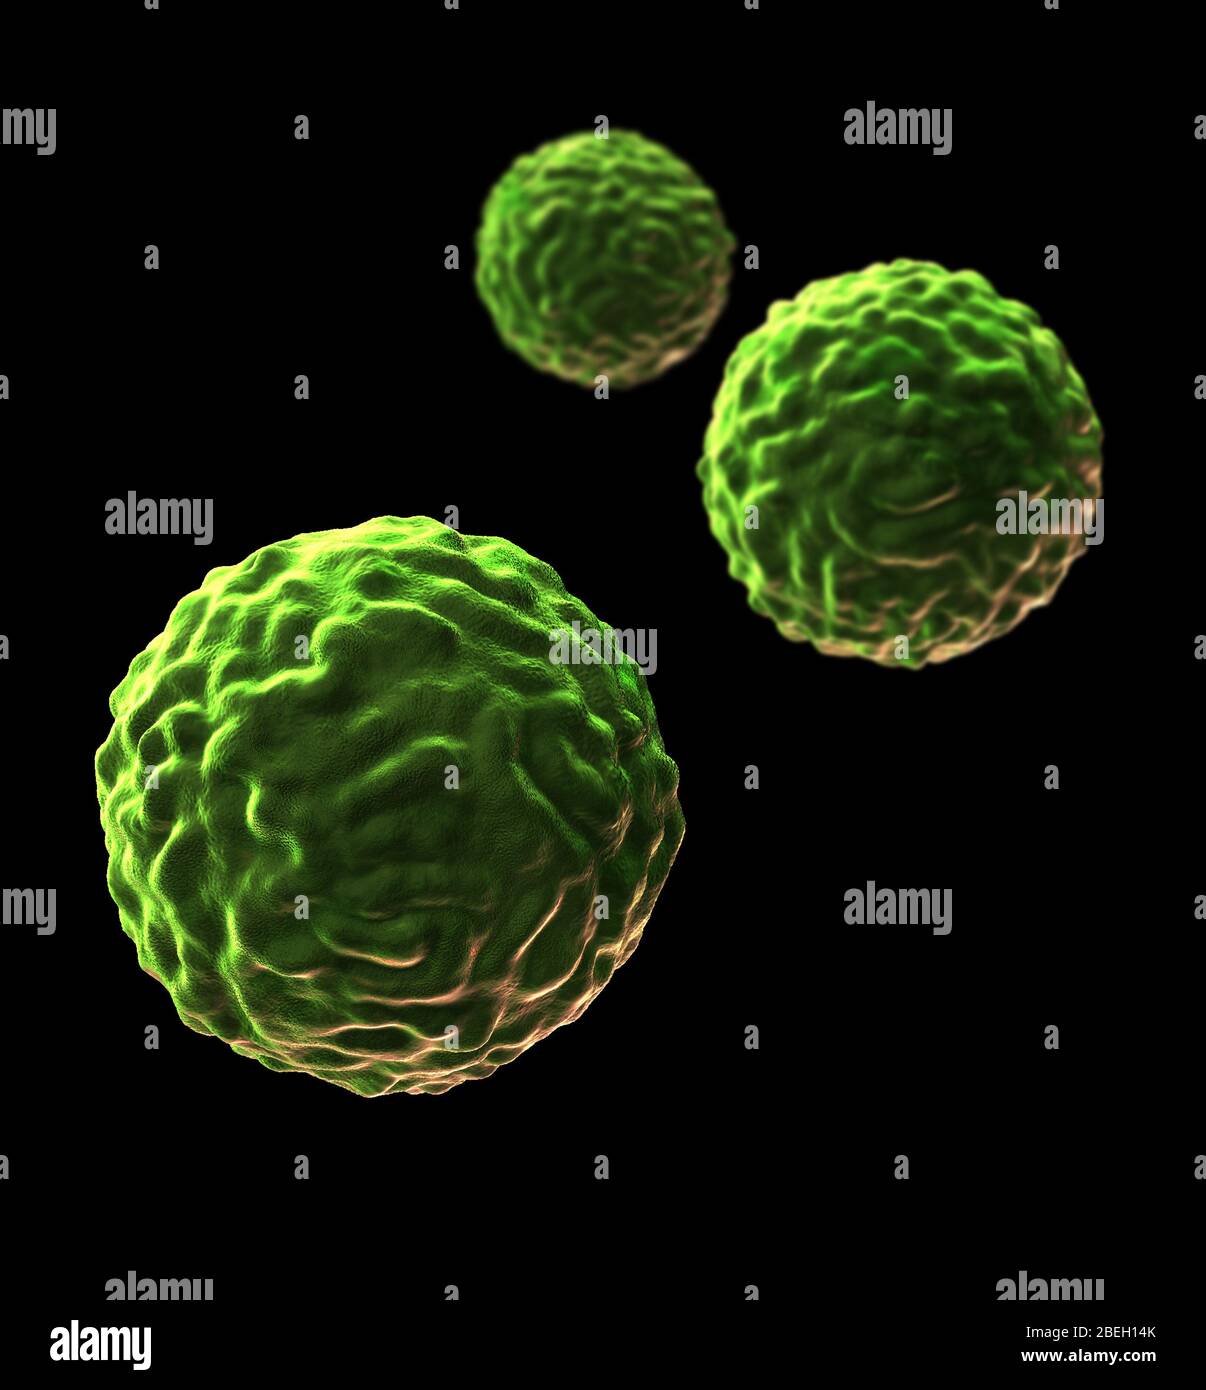 Darstellung von Stammzellen. Stammzellen können in jeden anderen Zelltyp differenzieren. Es gibt drei Haupttypen von Säugetierstammzellen: Embryonale Stammzellen, die von Blastozysten abgeleitet werden; adulte Stammzellen, die in einigen adulten Geweben gefunden werden; und Nabelschnurblutstammzellen, die in der Nabelschnur gefunden werden. Der Zelltyp, in den sie reifen, hängt von den biochemischen Signalen ab, die von den unreifen Zellen empfangen werden. Stockfoto